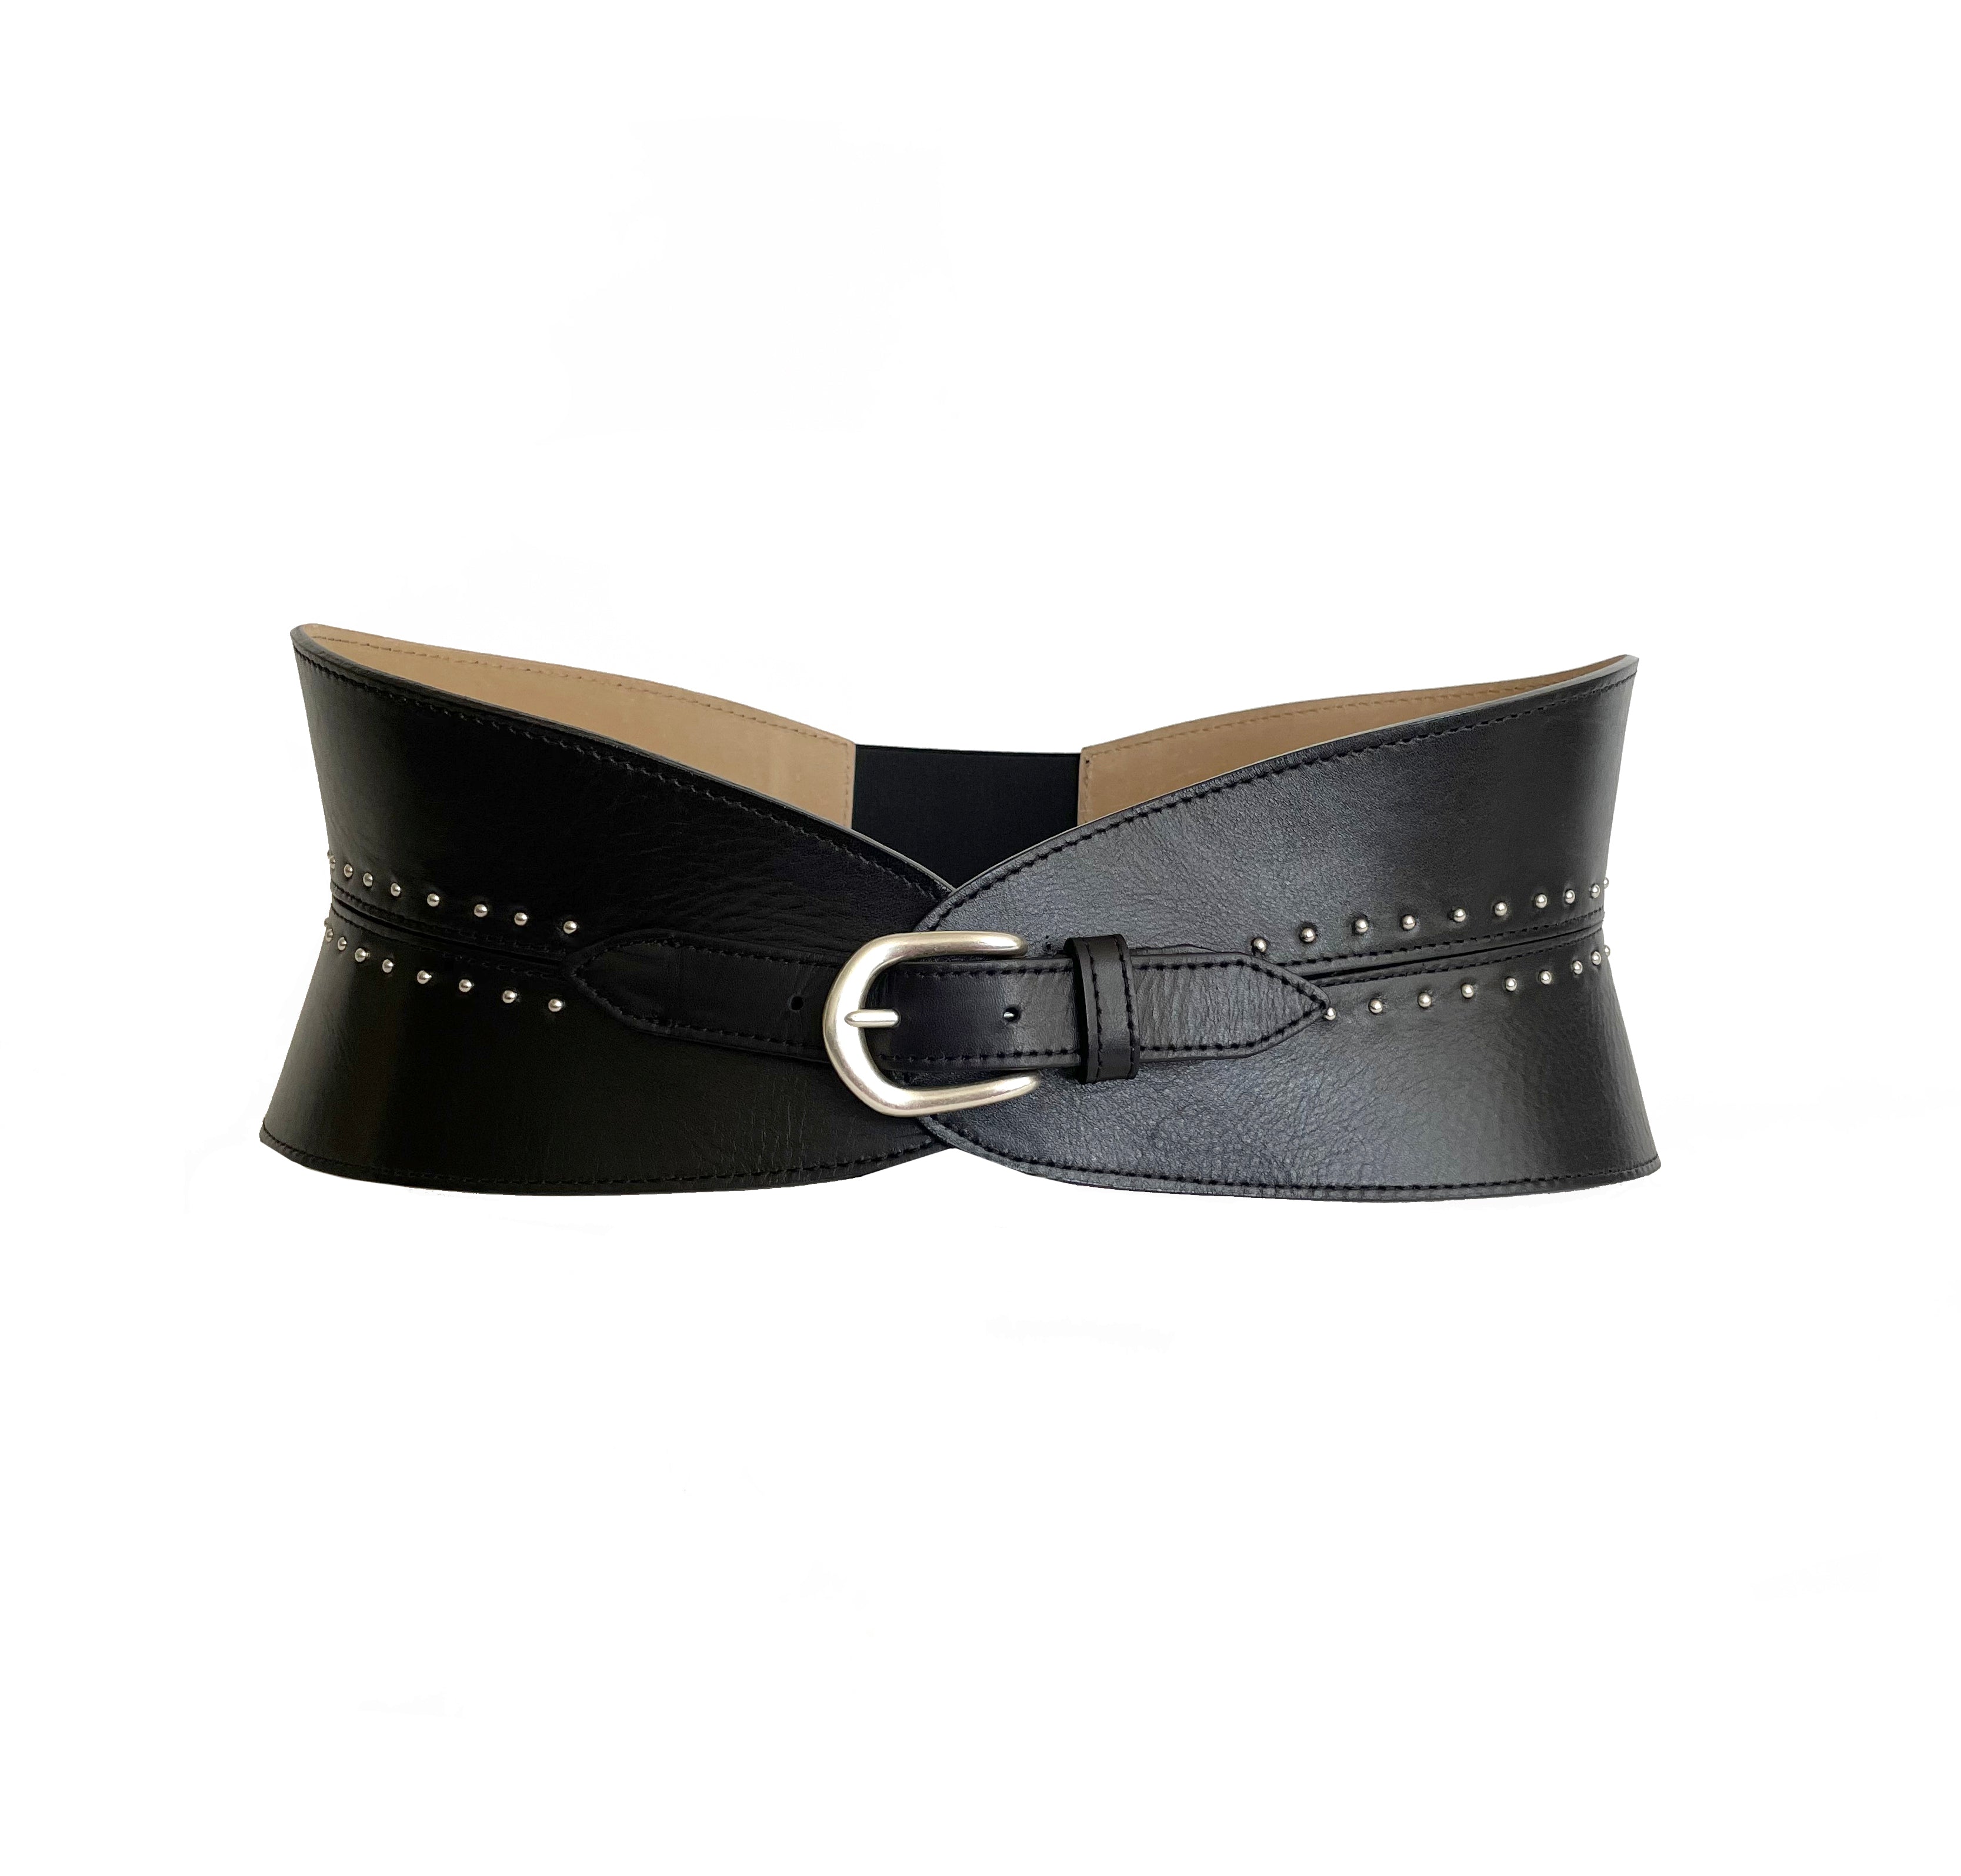 Fashion Belt, Leather Corset Belt, Wide Leather Belt Women, Wide